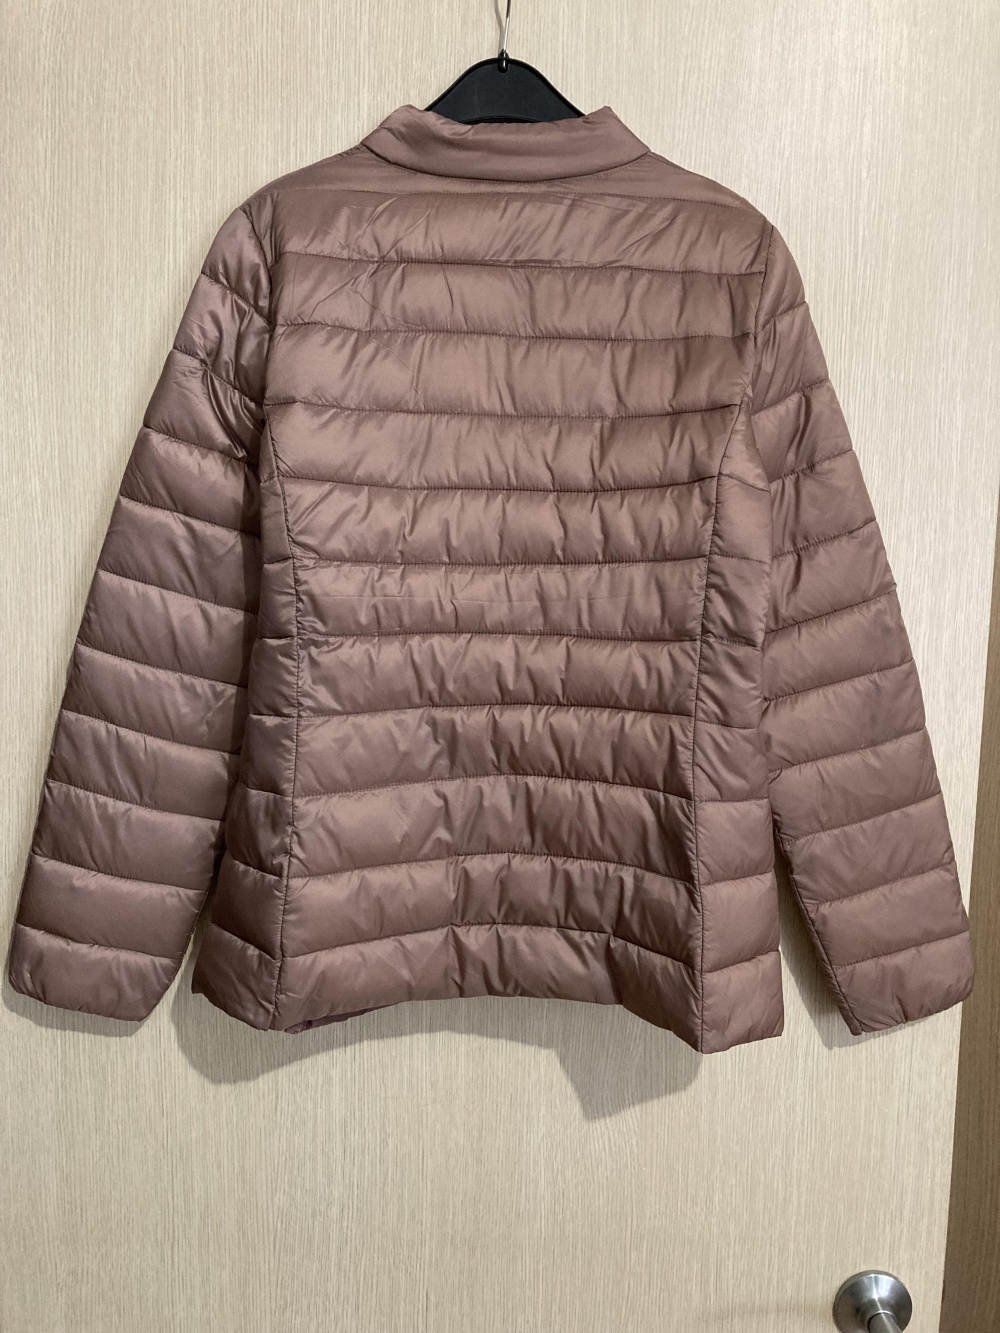 Куртка “ Befree ”, 46-48 размер